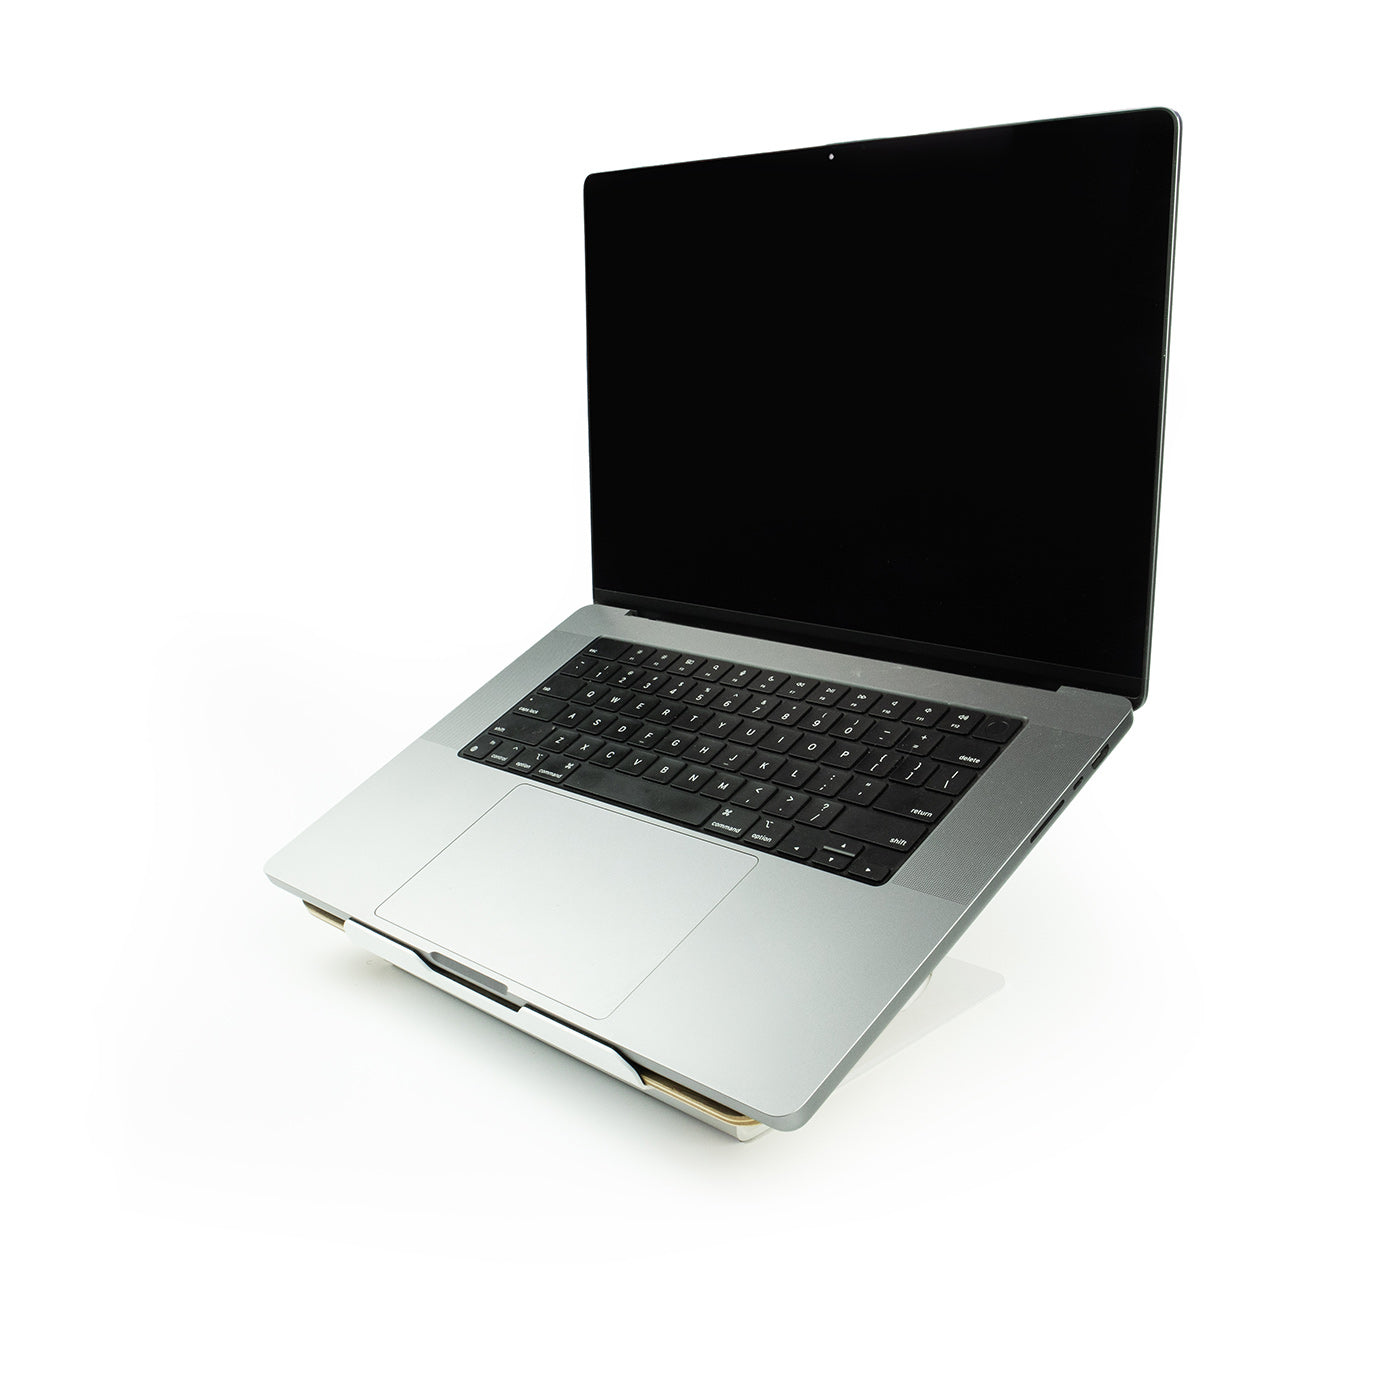 Dąb z podstawką pod laptopa — biała stal